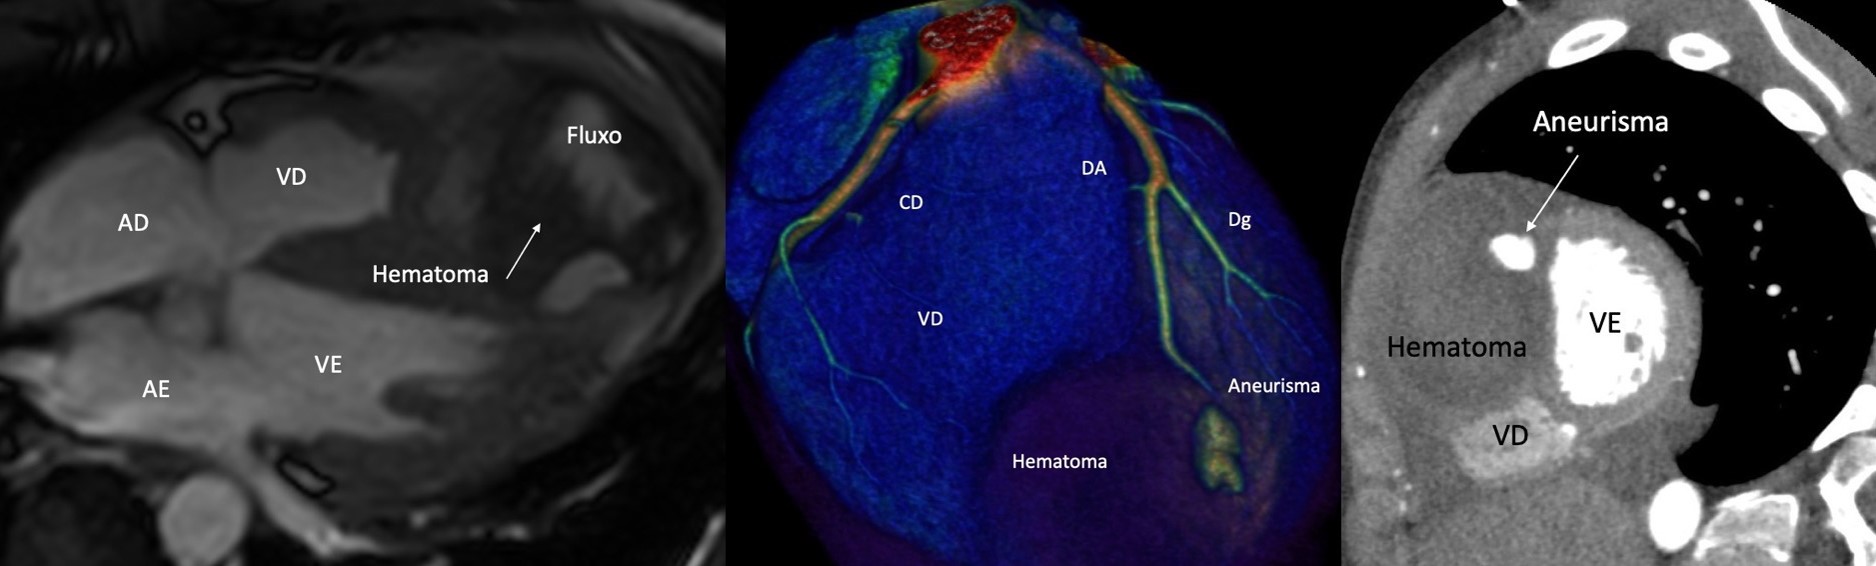 Ressonância magnética cardíaca: aneurisma de artéria descendente anterior